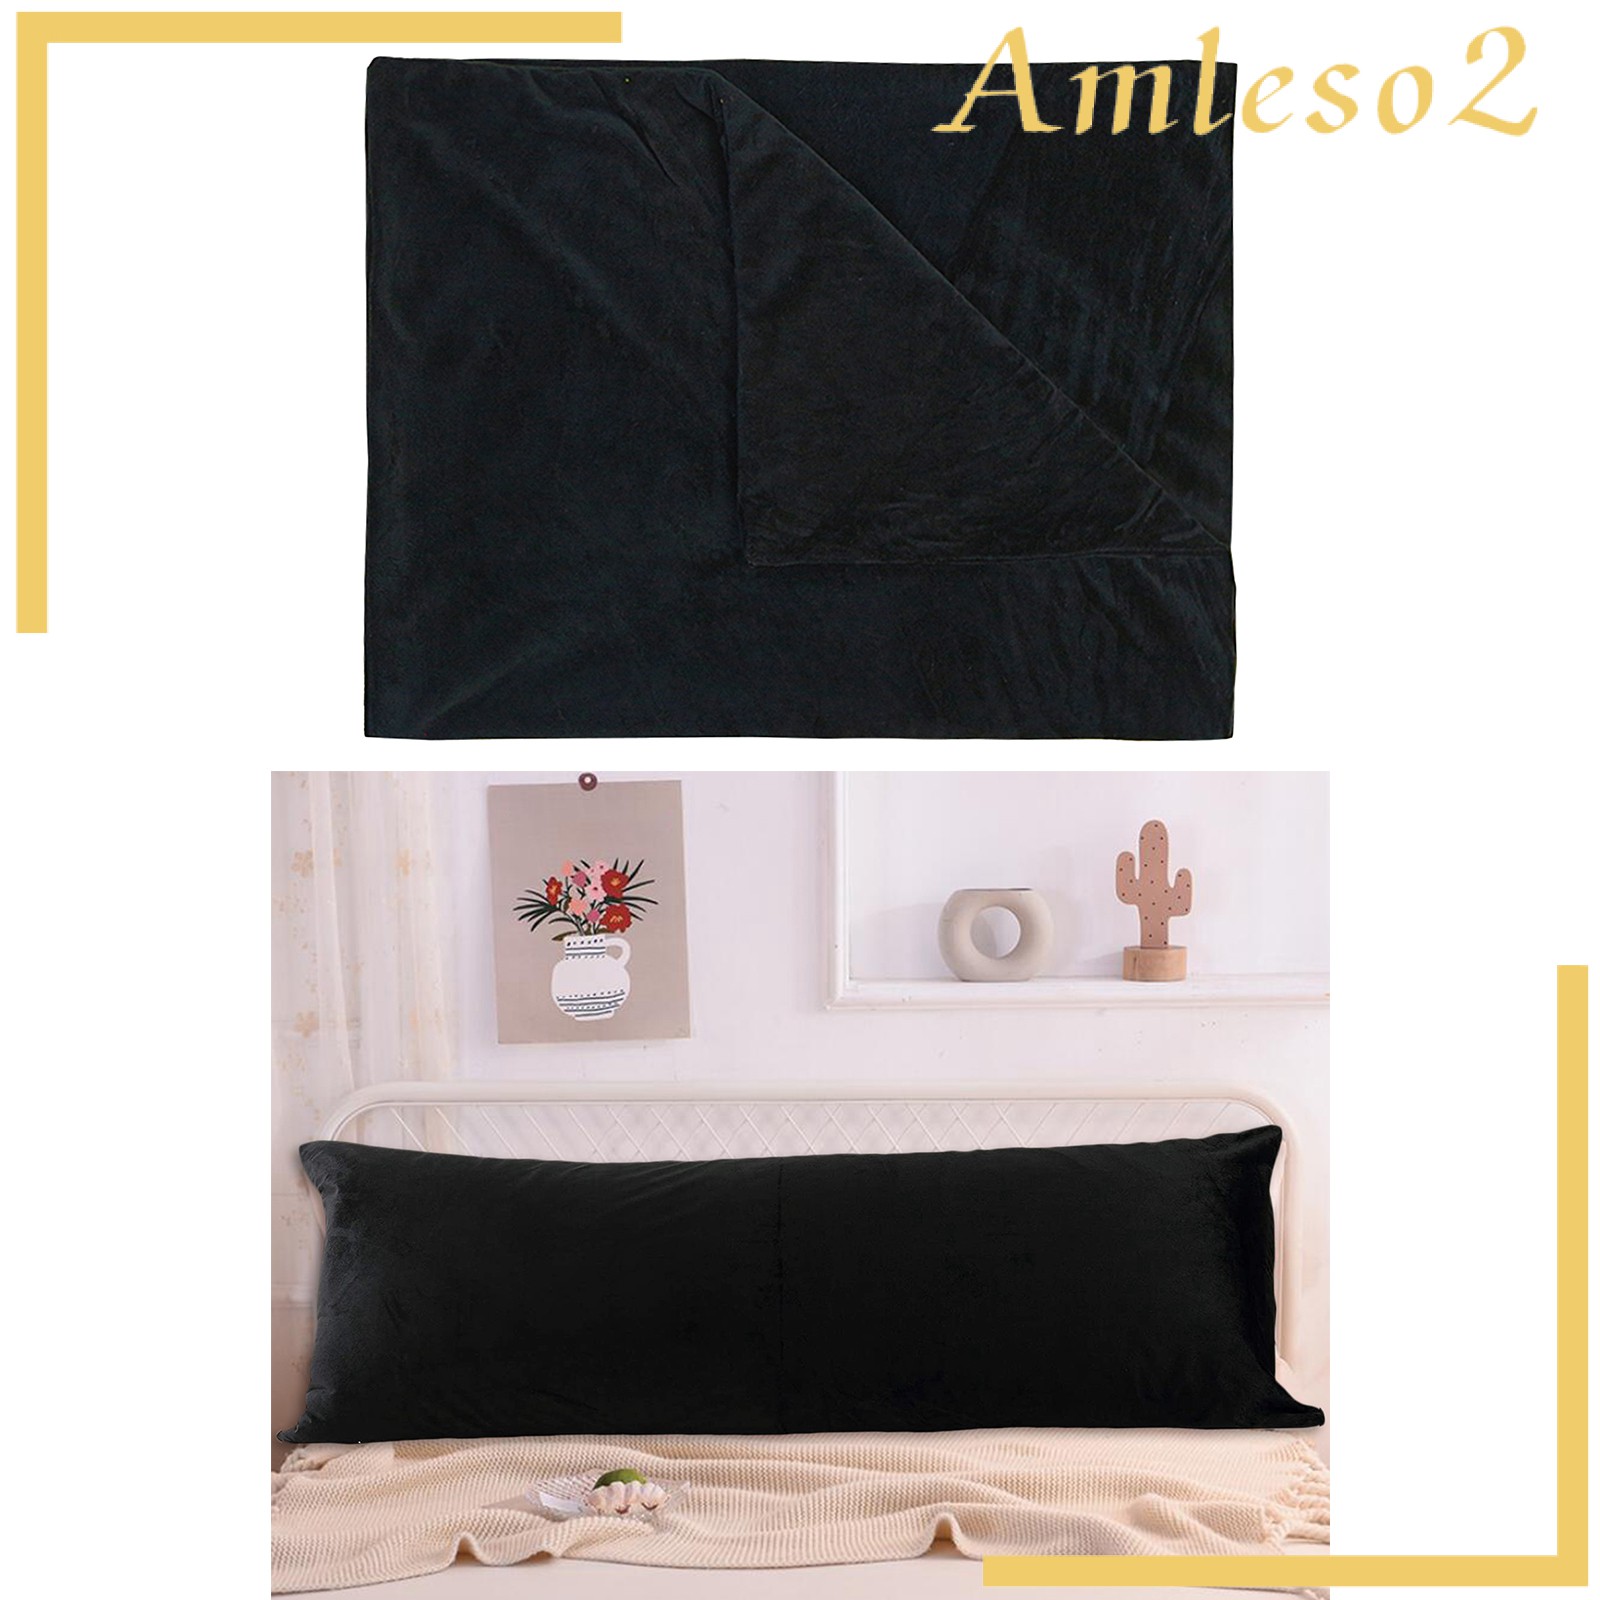 [AMLESO2] Bed Sleep Long Body Pillow Case Cover Velvet Protector Zipper Pillowcase 2 Size